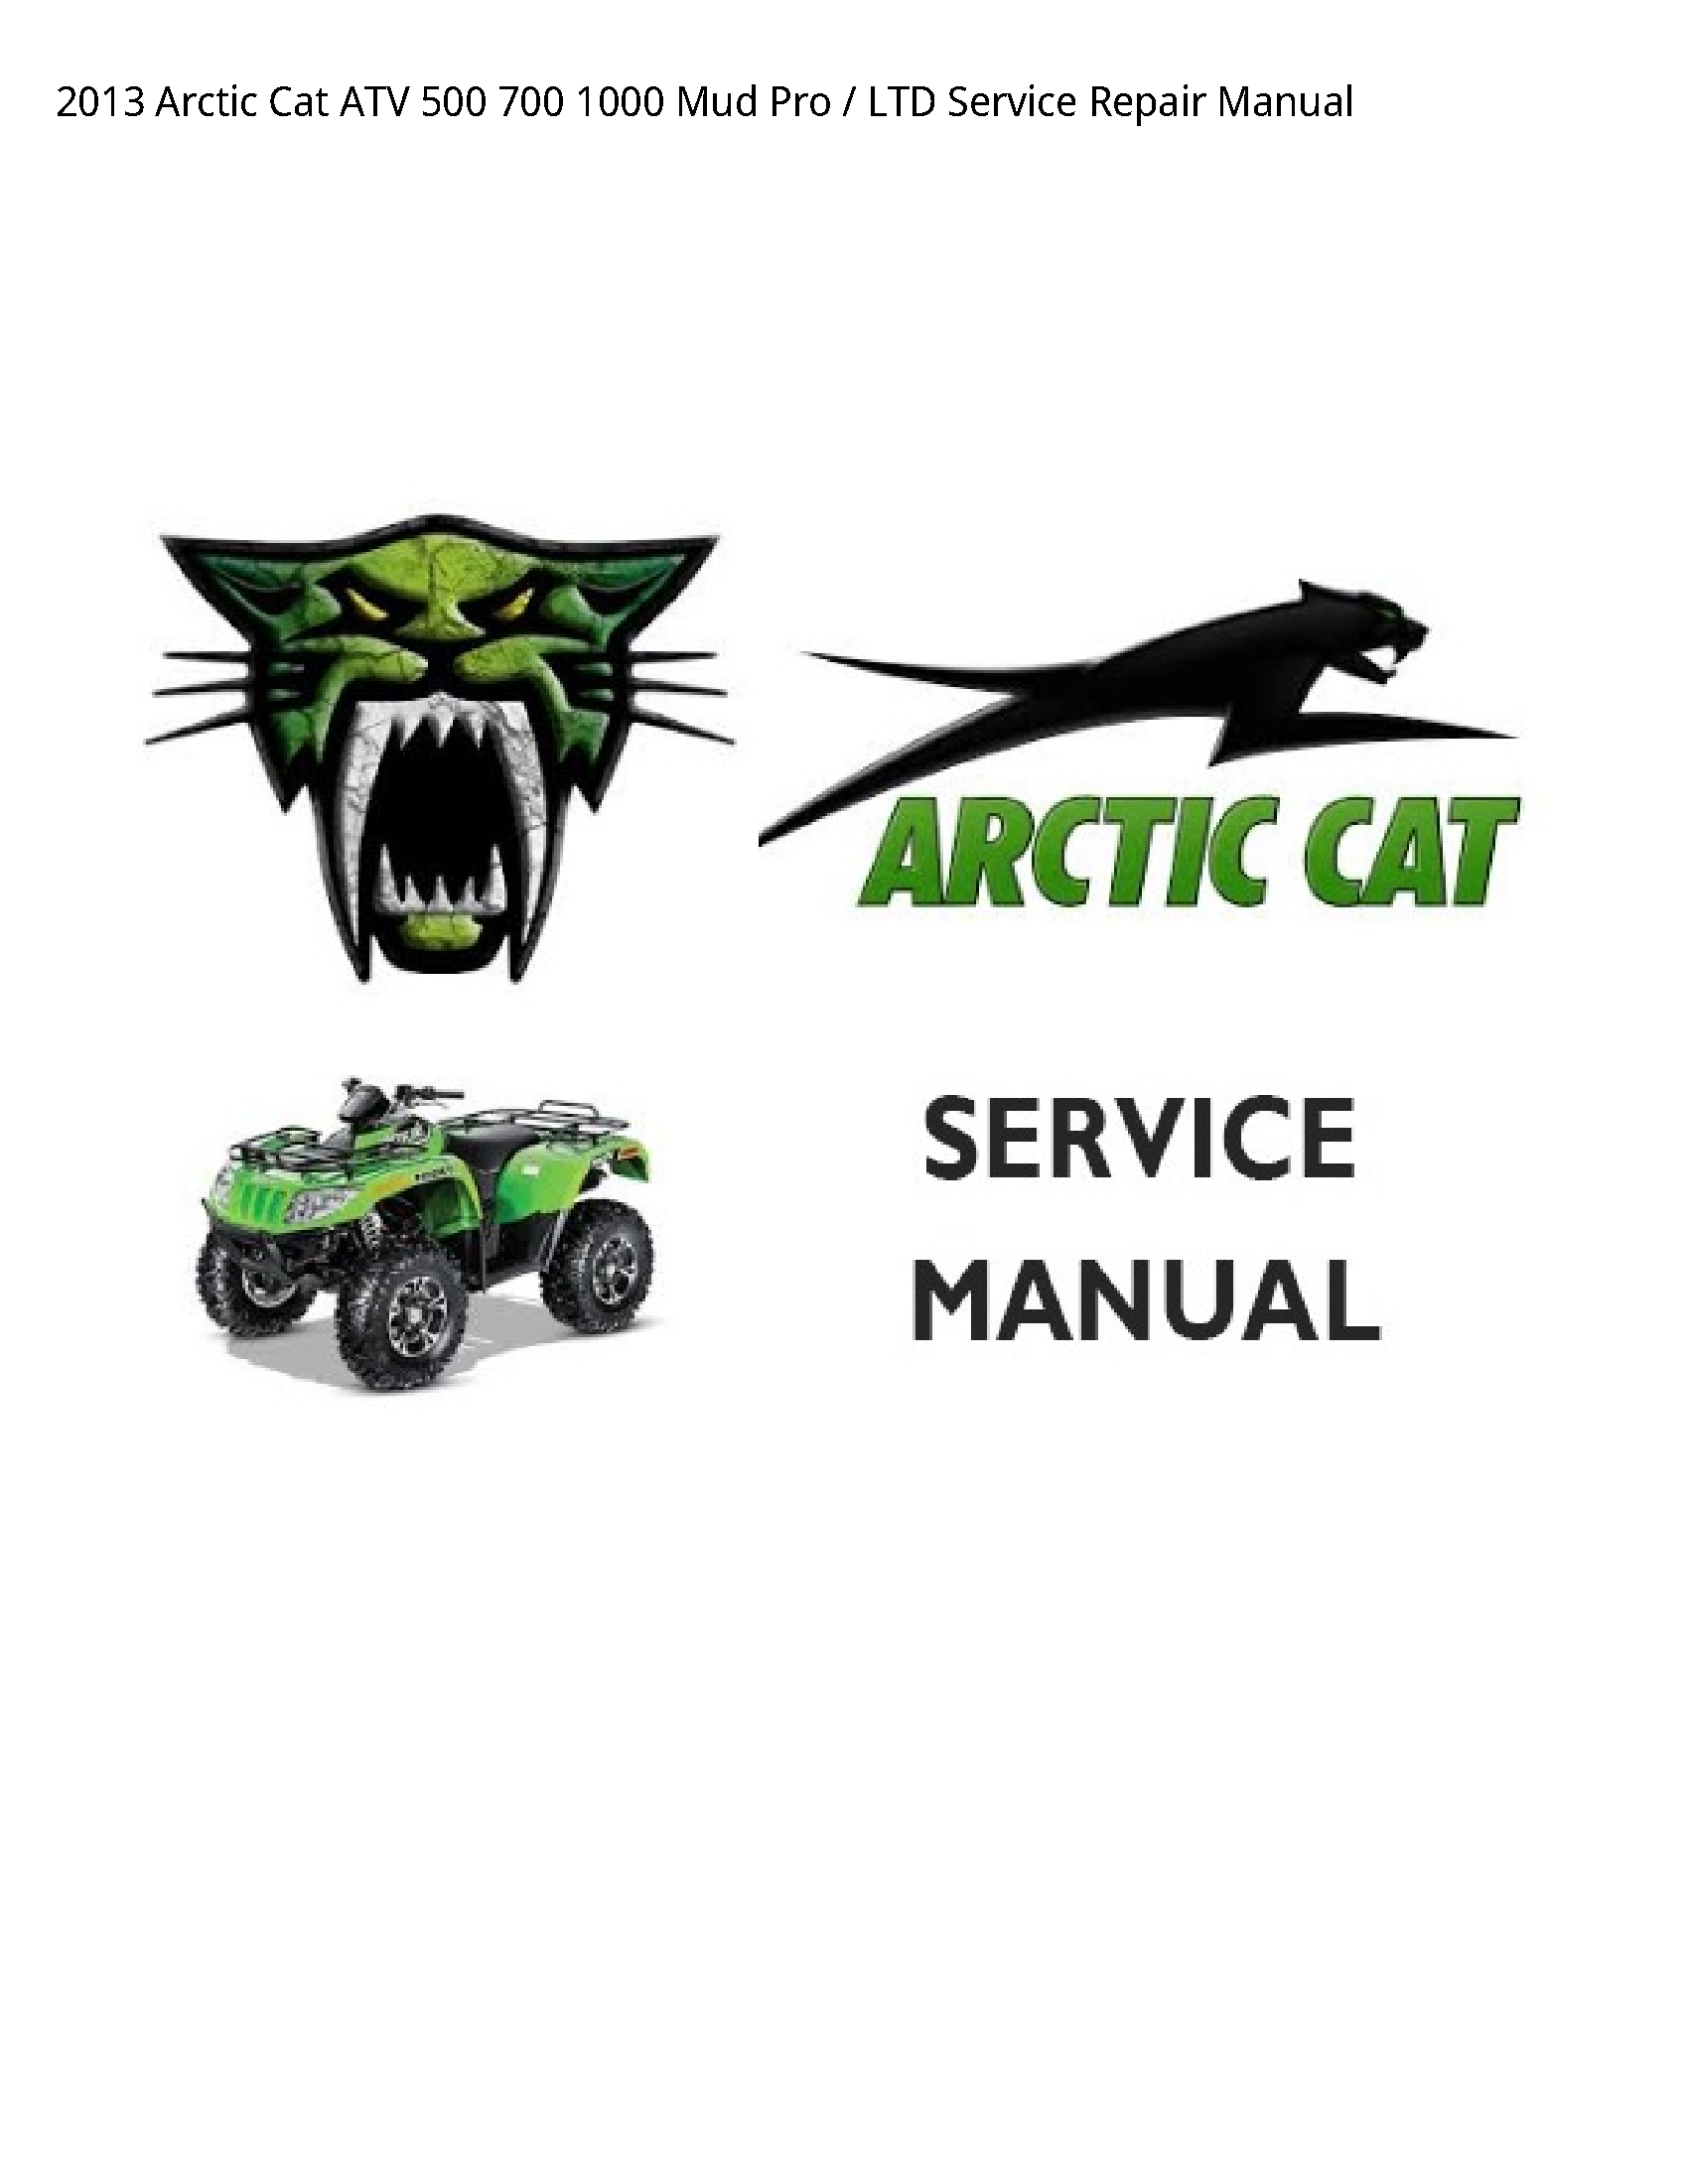 Arctic Cat 500 ATV Mud Pro LTD manual